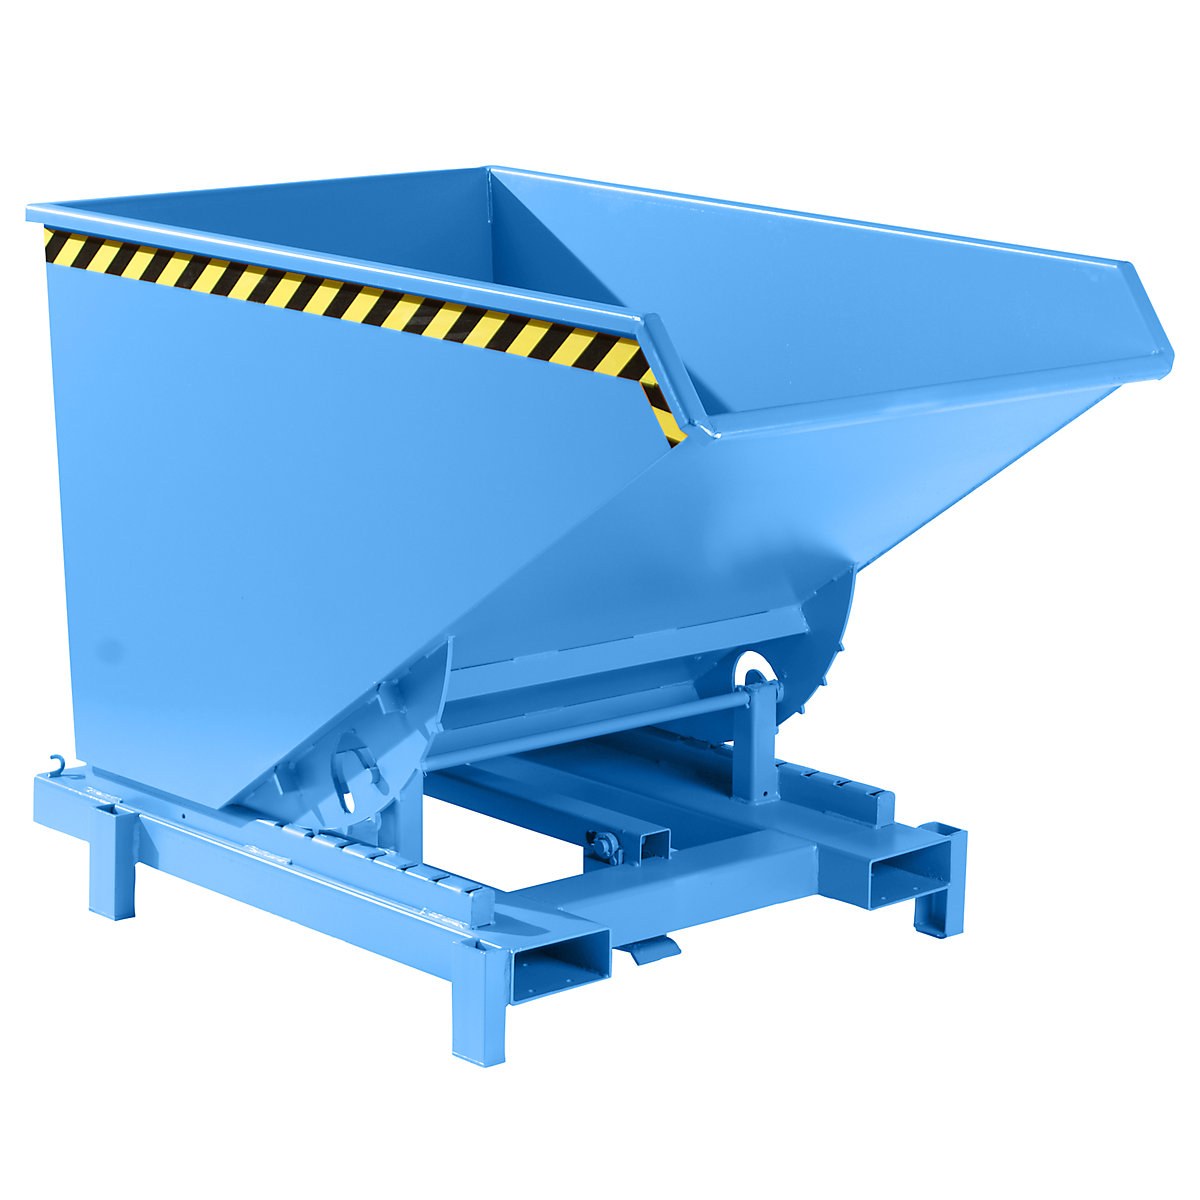 Vyklápěcí přepravníky pro velká zatížení – eurokraft pro, objem 1,2 m³, nosnost 4000 kg, modrá RAL 5012-11